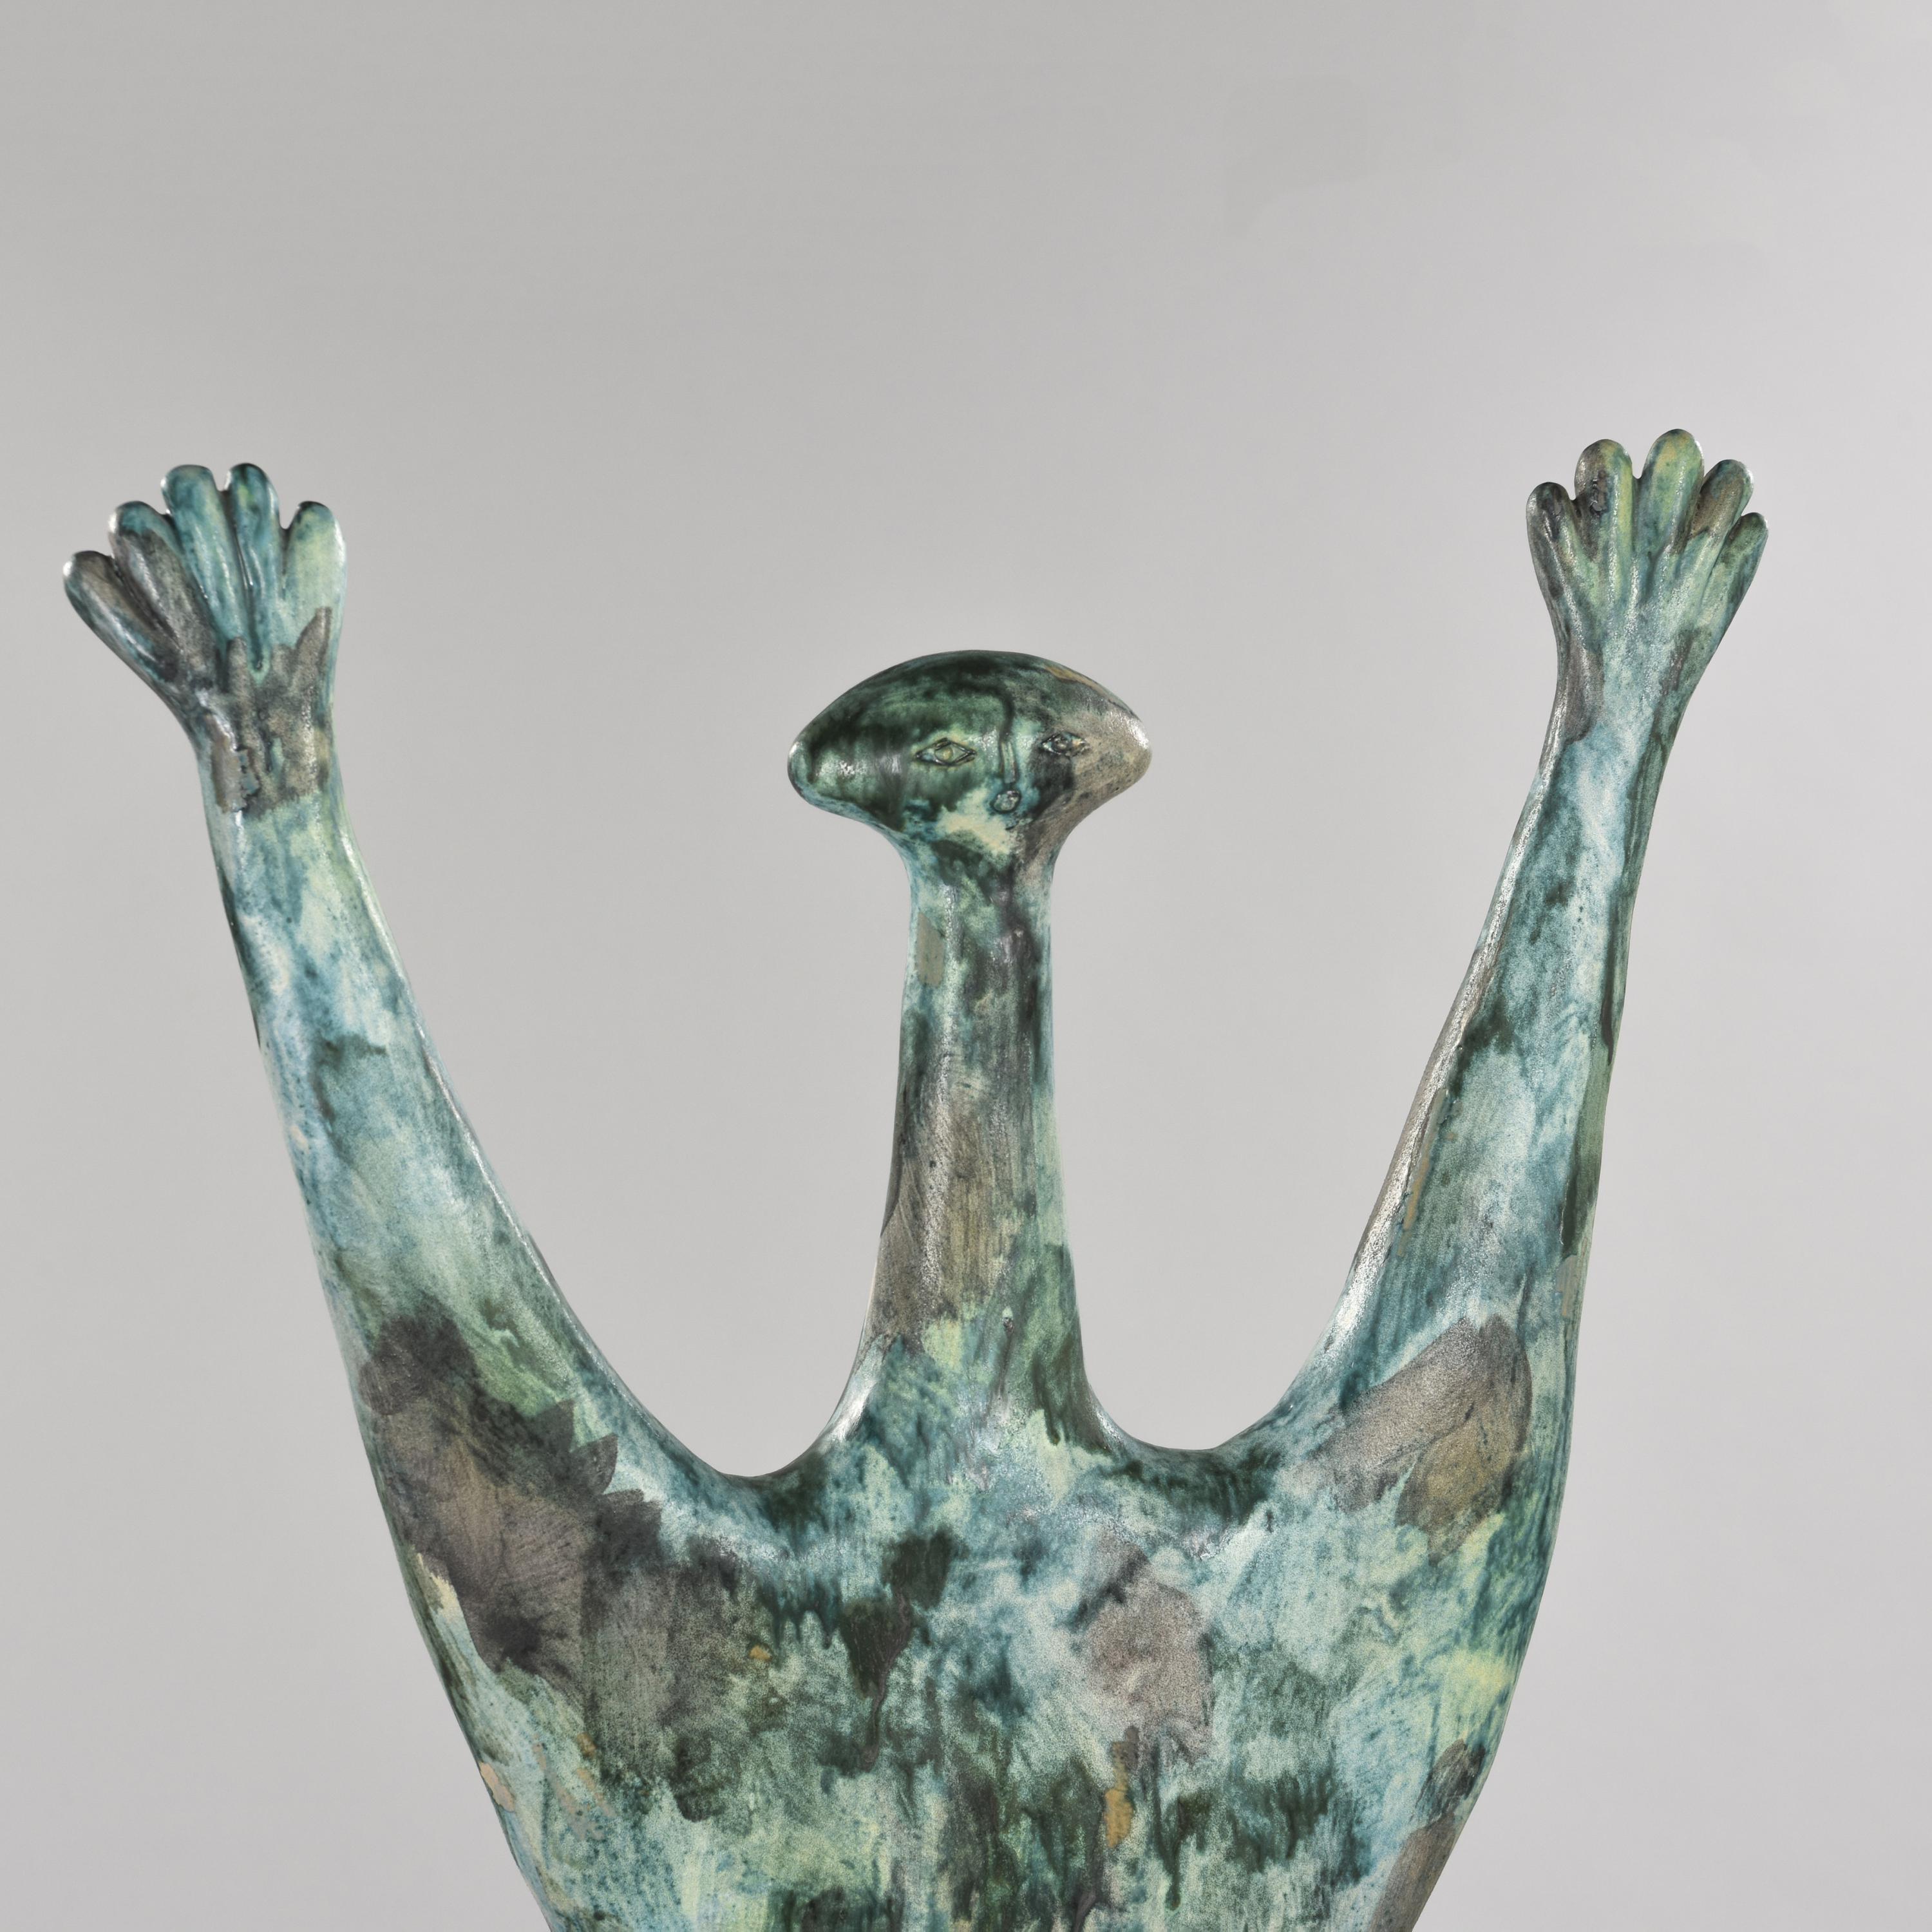 Italian A Unique Piece, Ceramic Sculpture by Alvigno Bagni, 1964